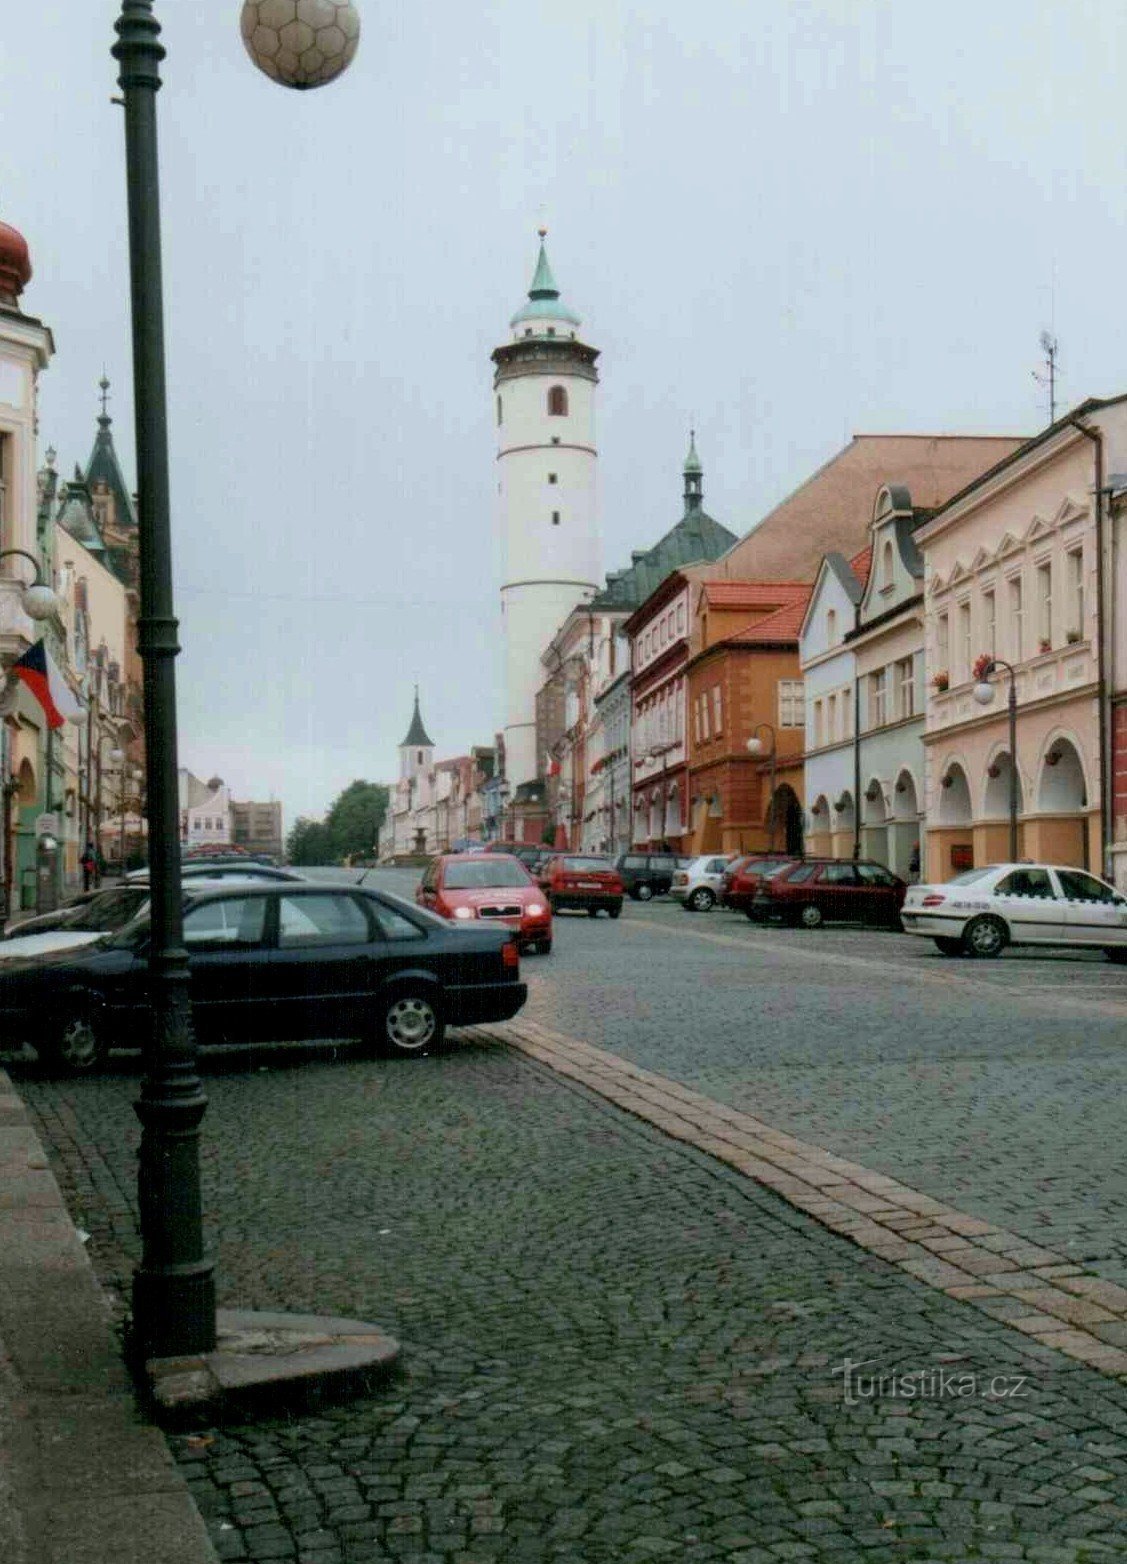 άλλη απόδειξη ότι ο πύργος στο Domažlice είναι γερμένος